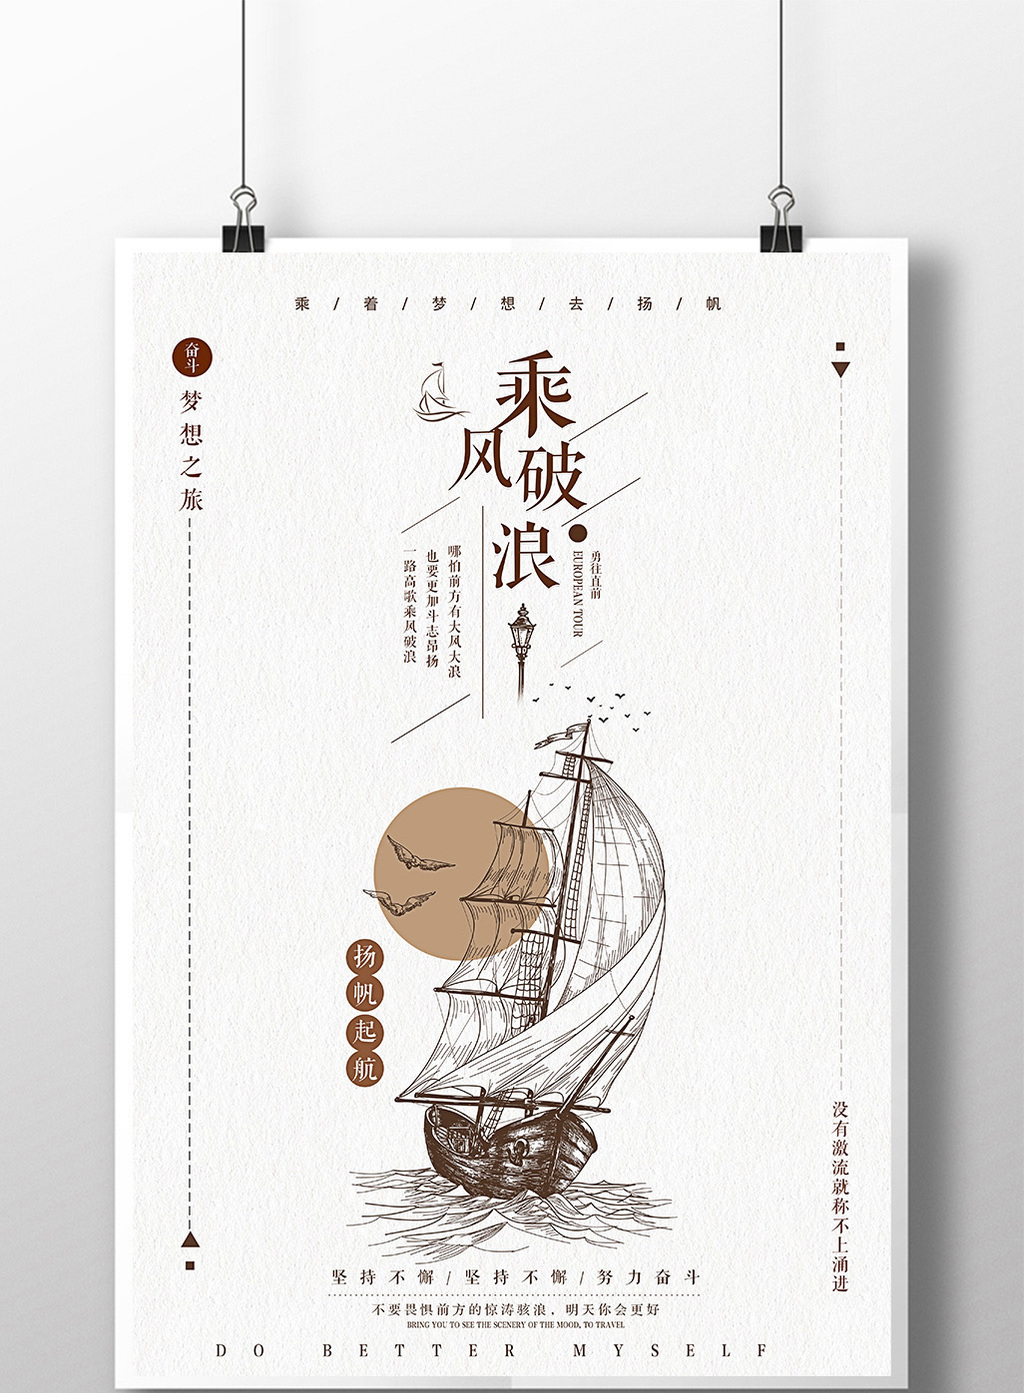 手绘帆船乘风破浪企业文化宣传海报设计